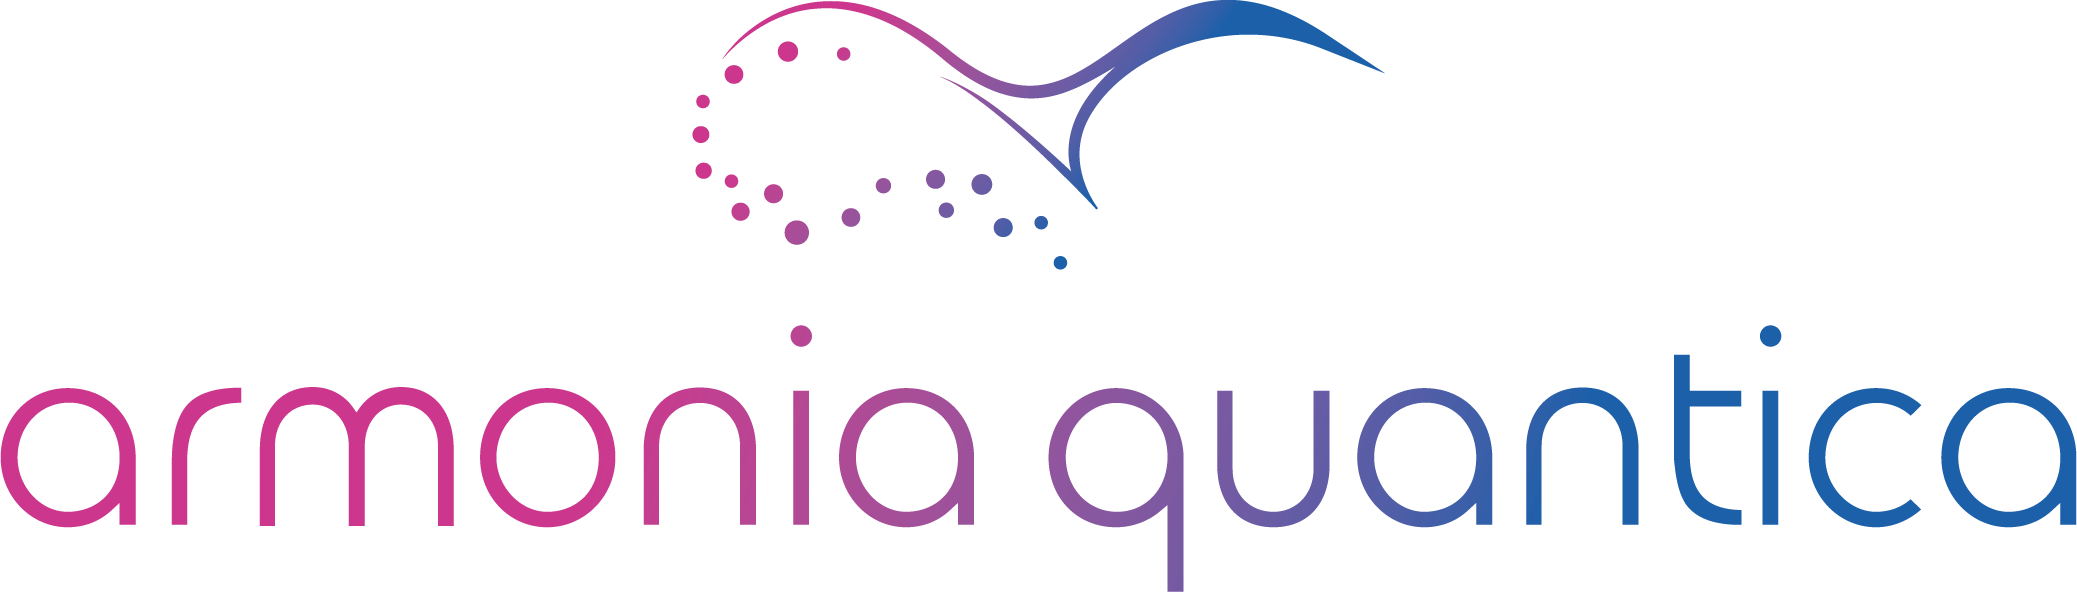 Armonia Quantica Logo